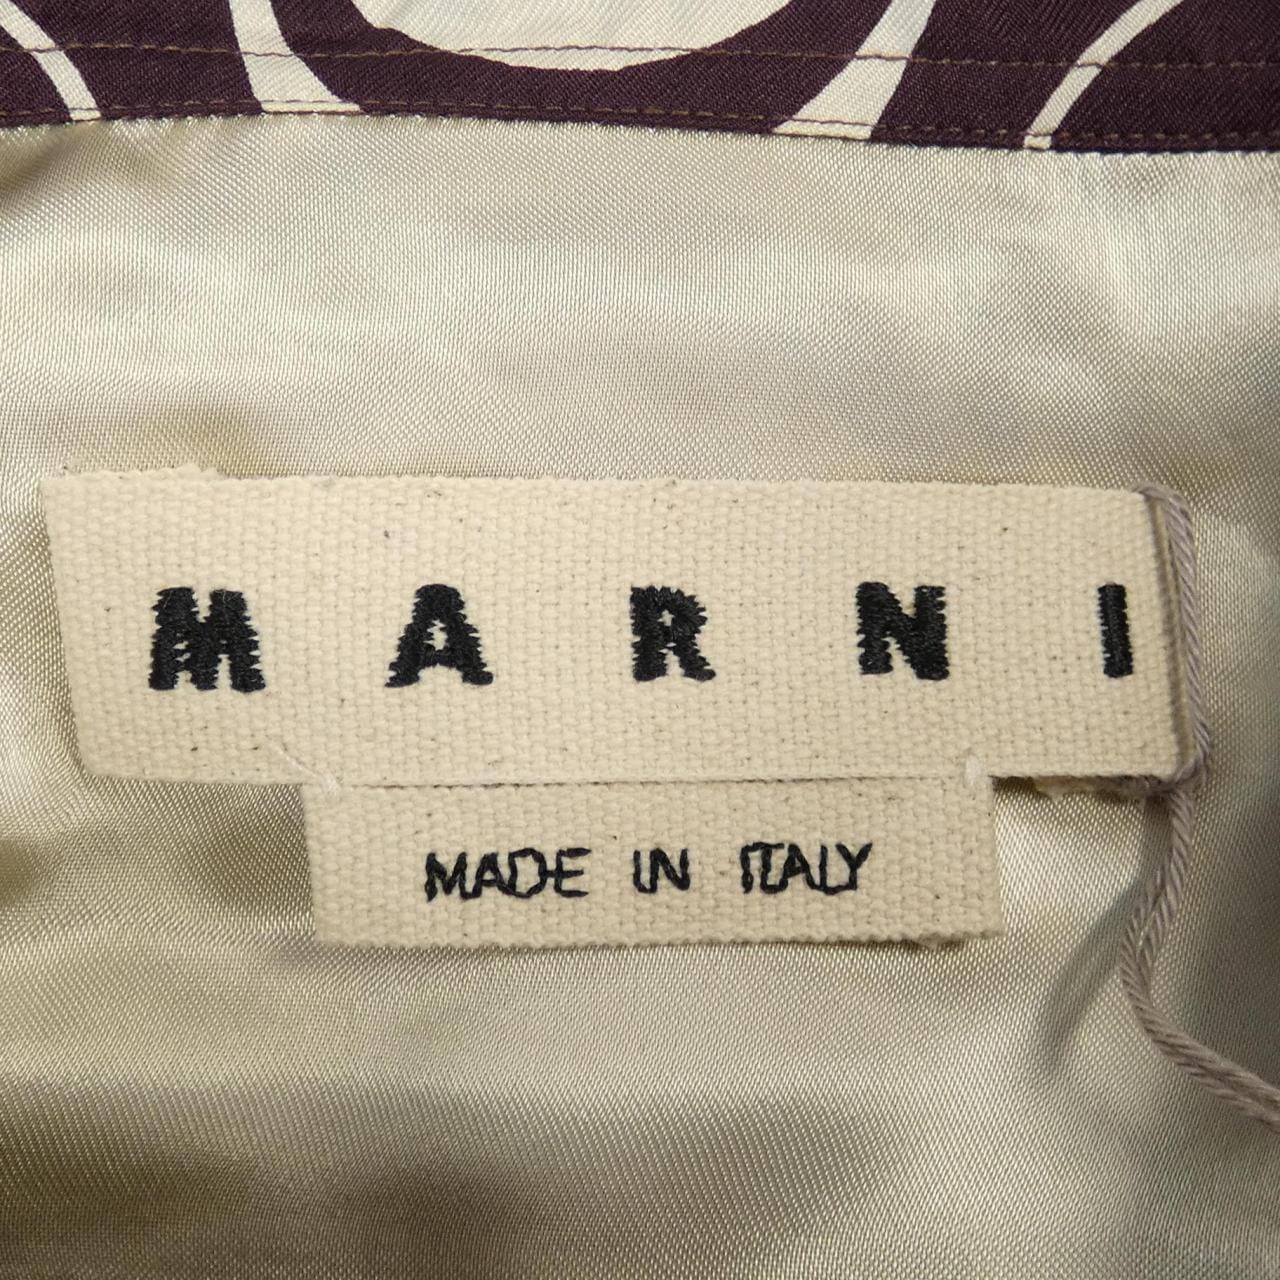 Marni shirt